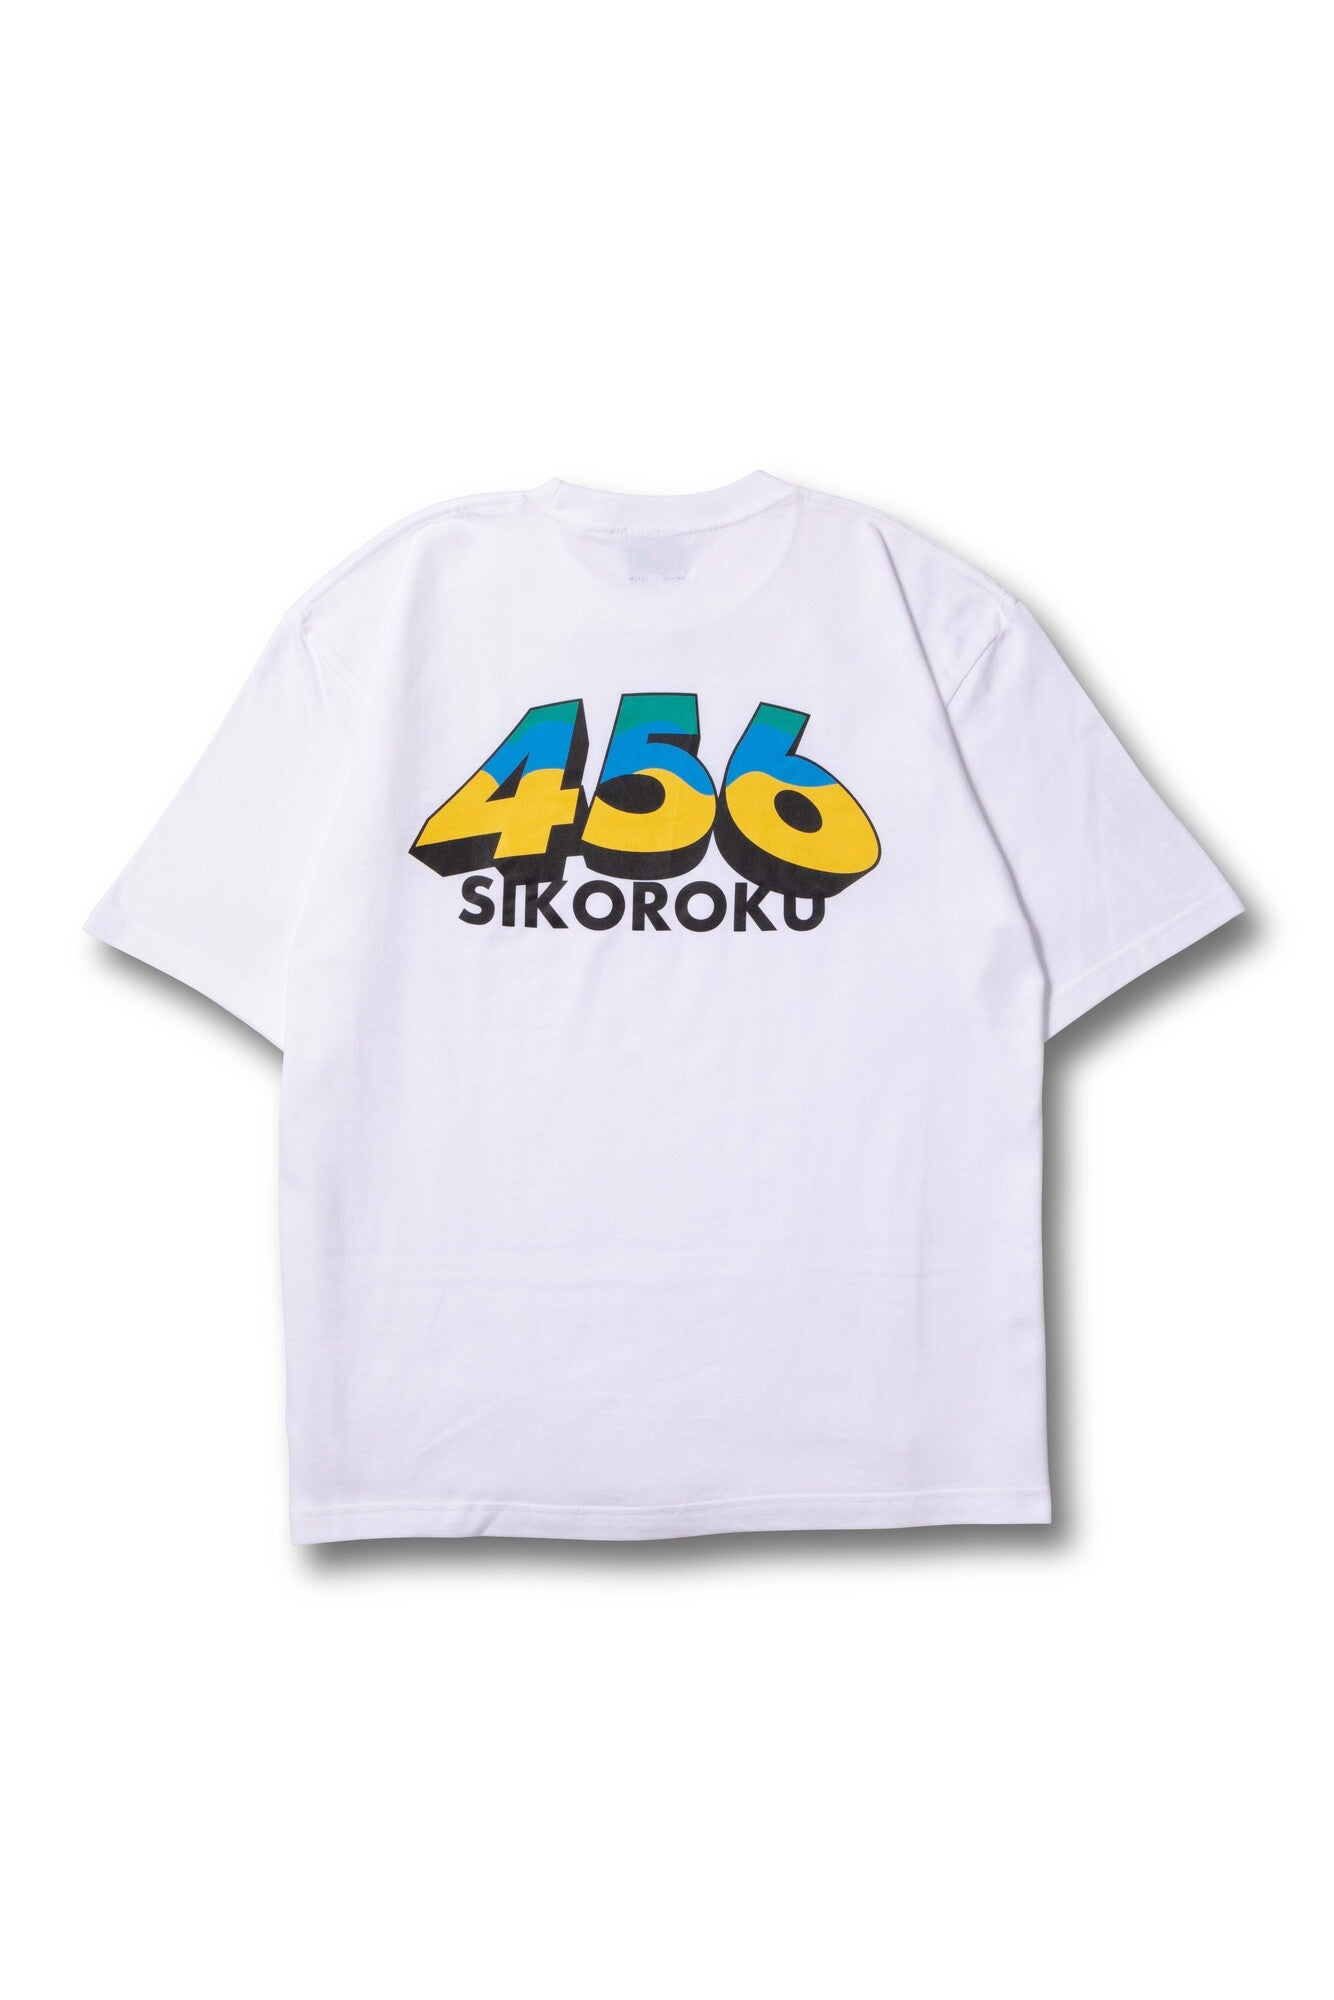 SHIKOROKU TEE / WHITE